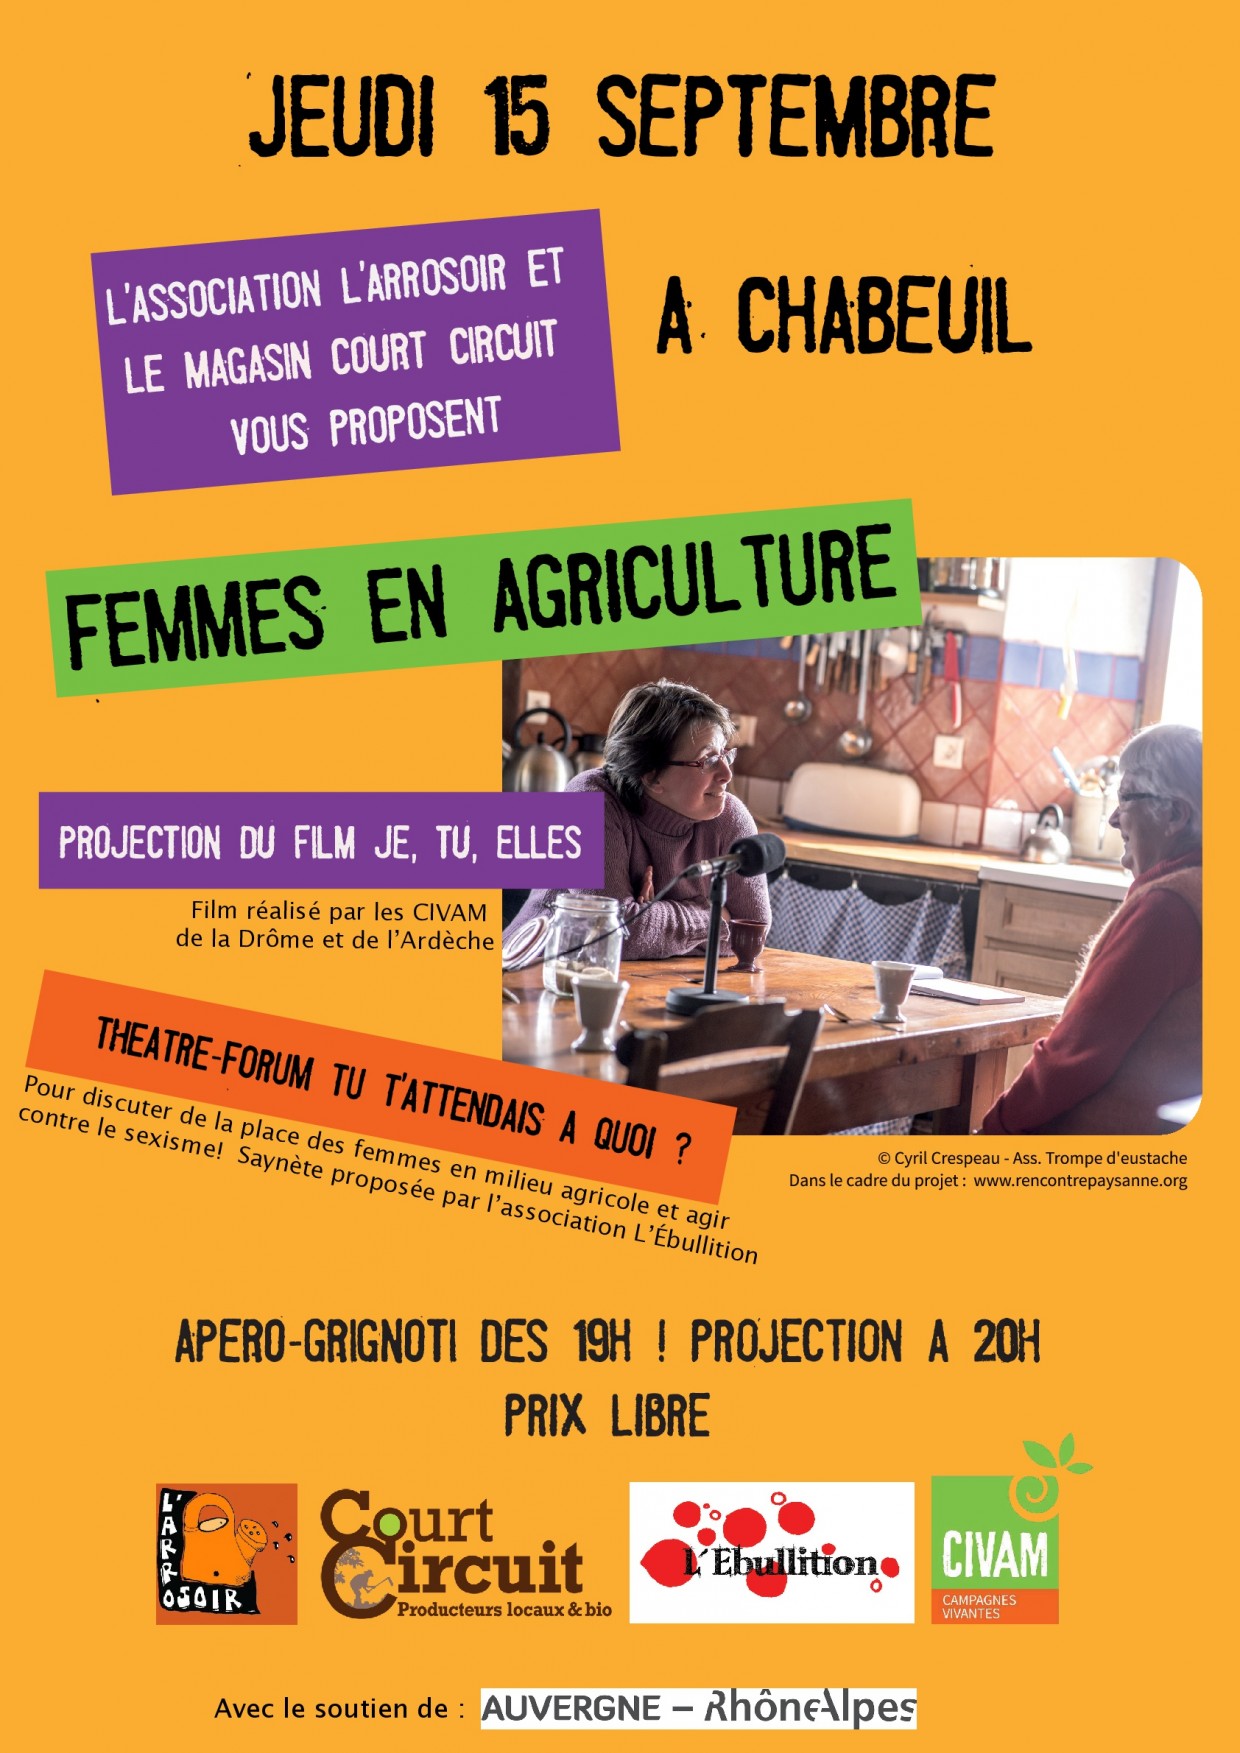 PROJECTION et THÉÂTRE FORUM AUTOUR DES FEMMES EN AGRICULTURE